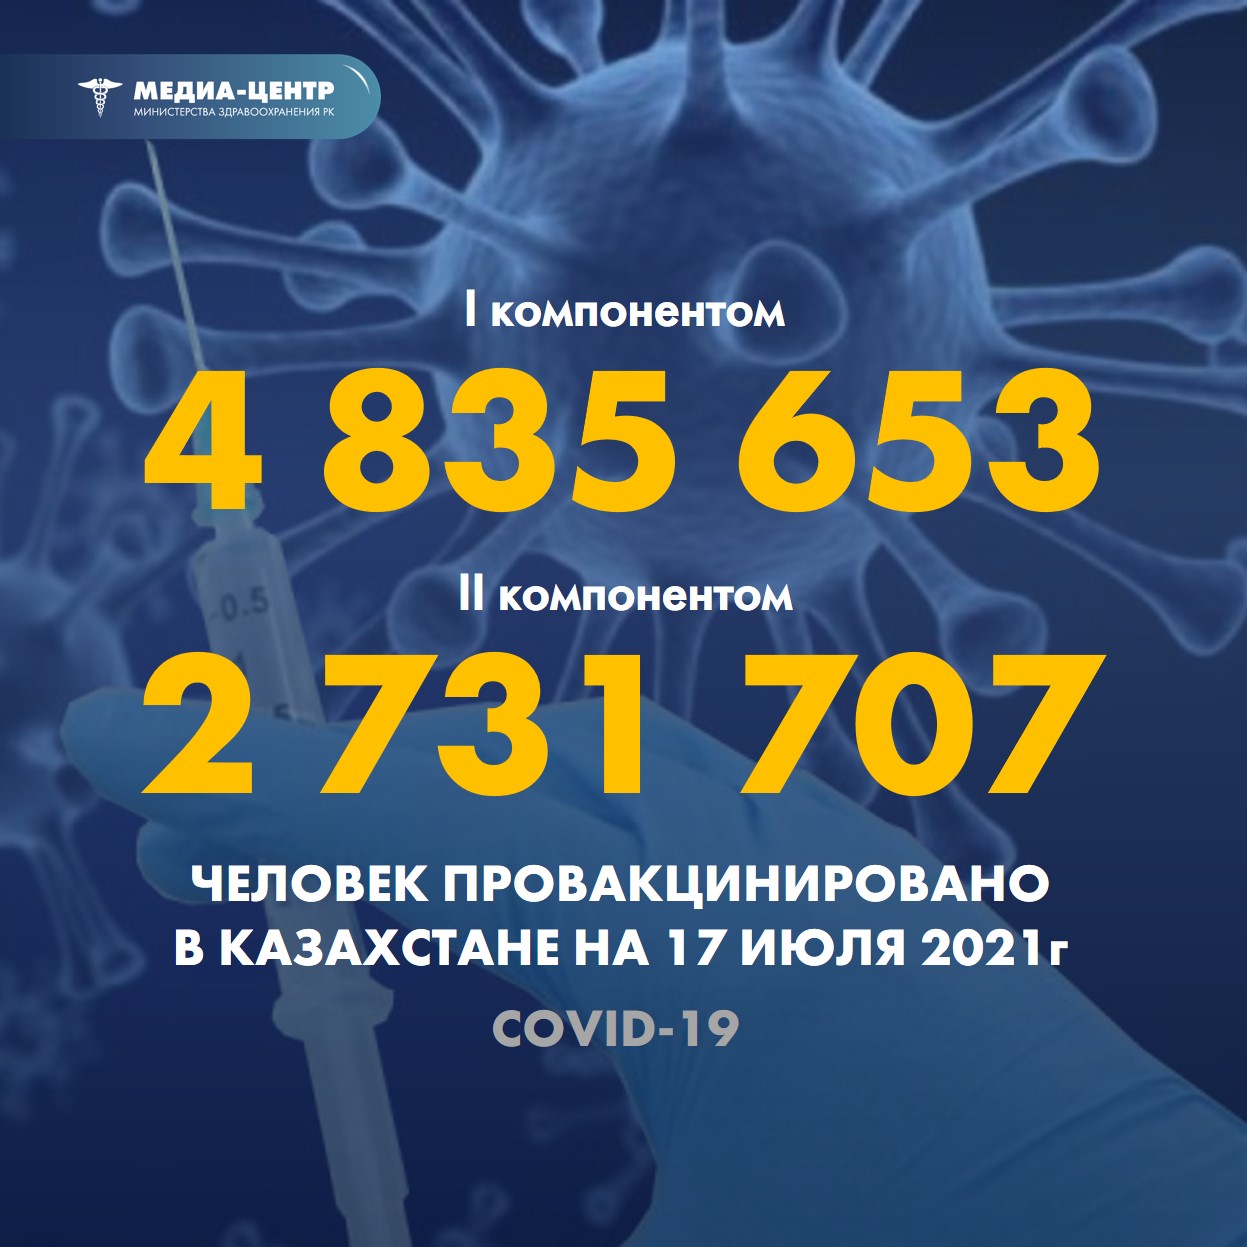 Информация о проведении вакцинации населения против КВИ на 17.07.2021 г. в разрезе регионов